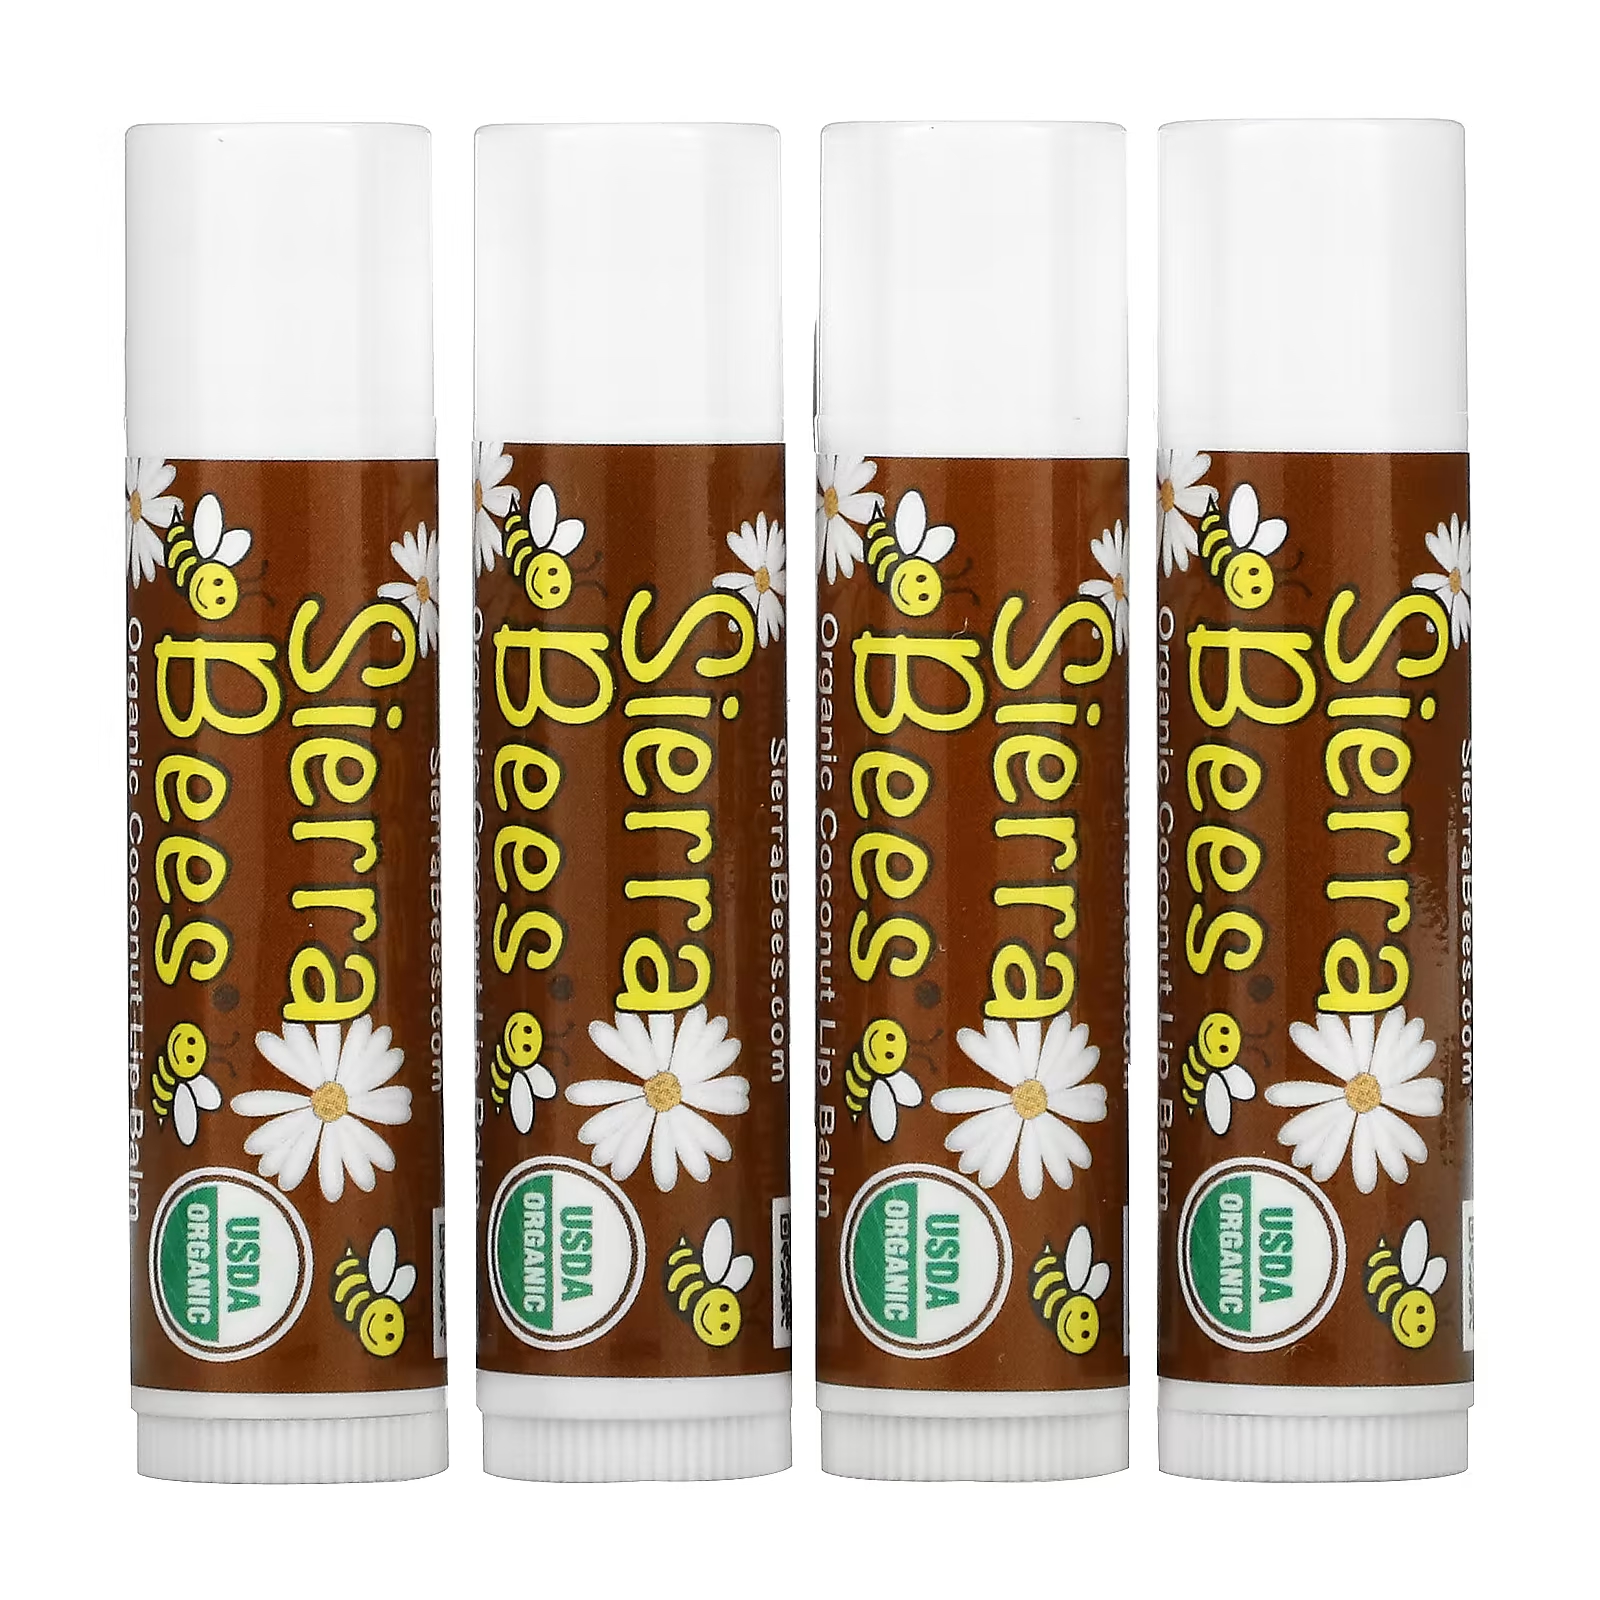 Органические бальзамы для губ Sierra Bees кокос, 4 упаковки по 4,25 г nuco органические кокосовые лепешки моринга 5 шт 14 г каждая